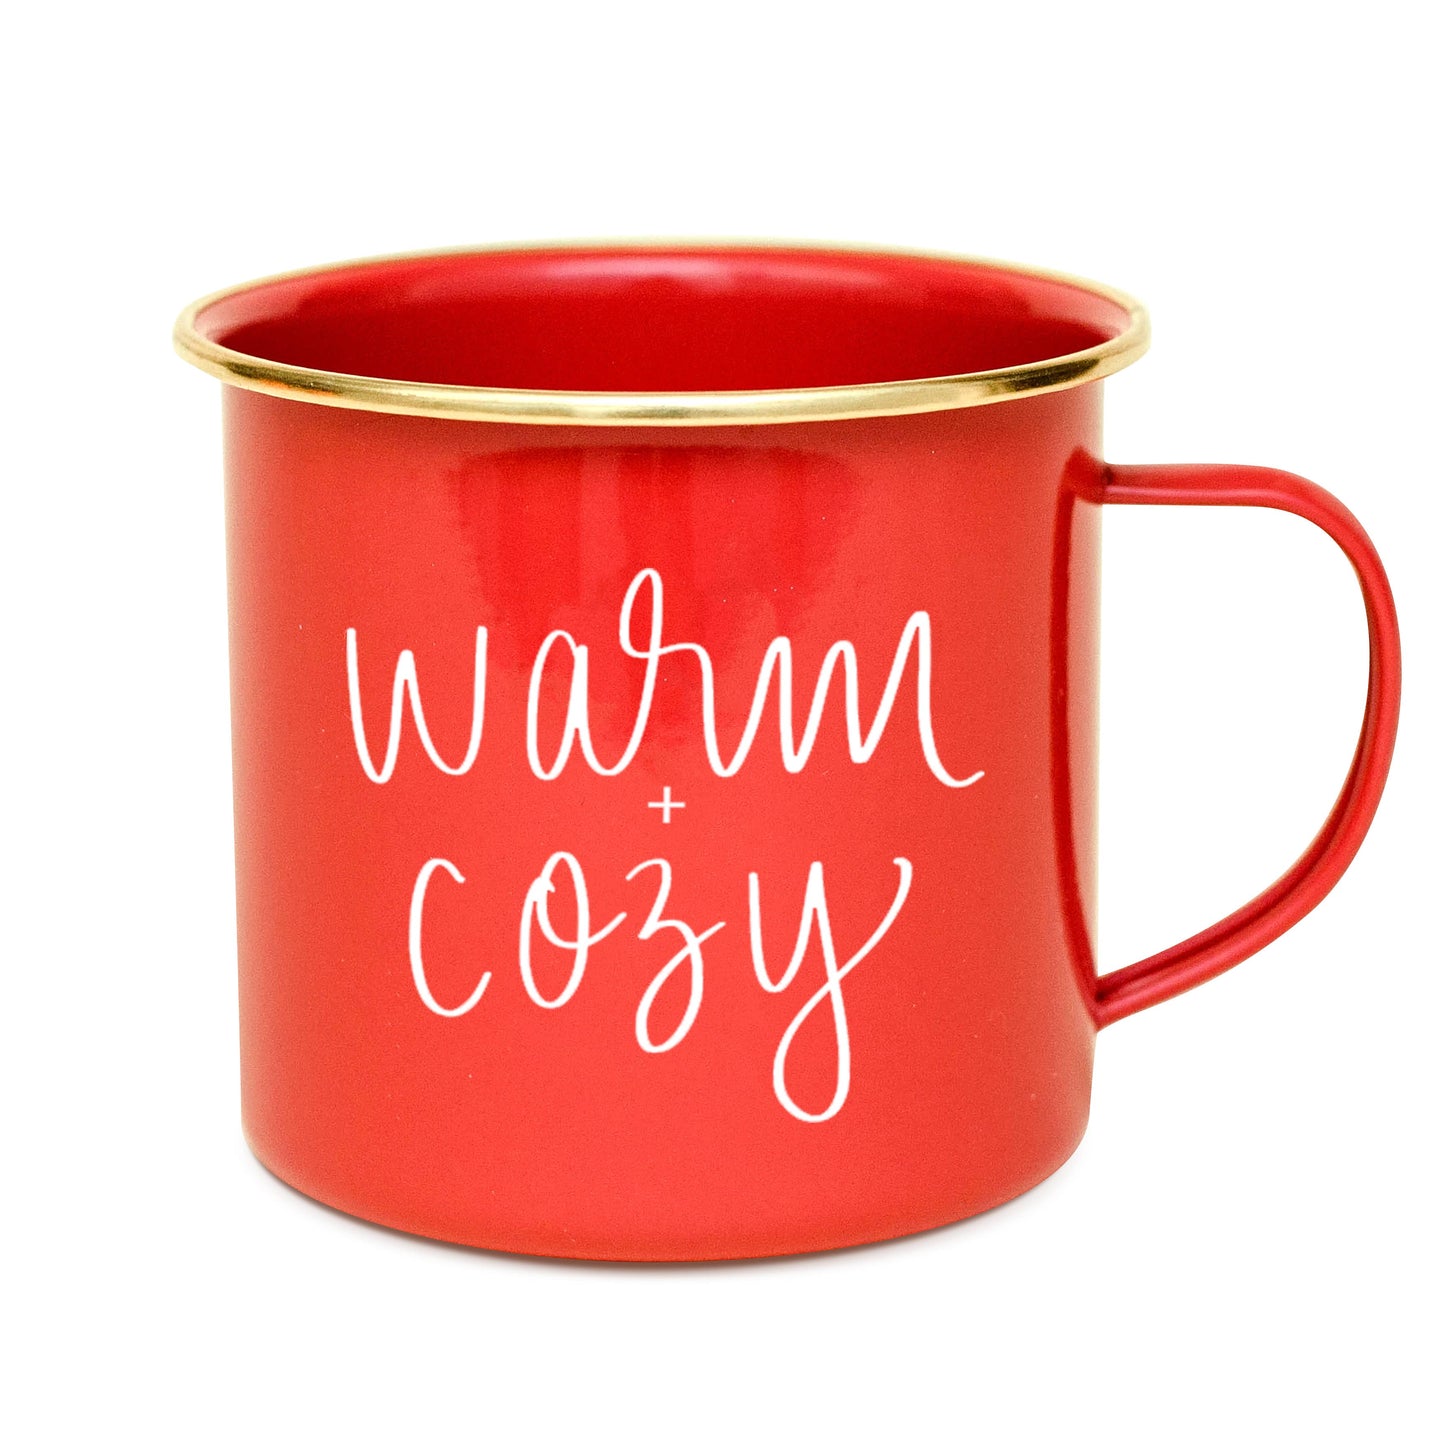 Warm and Cozy Coffee Mug - Christmas Home Decor & Gifts